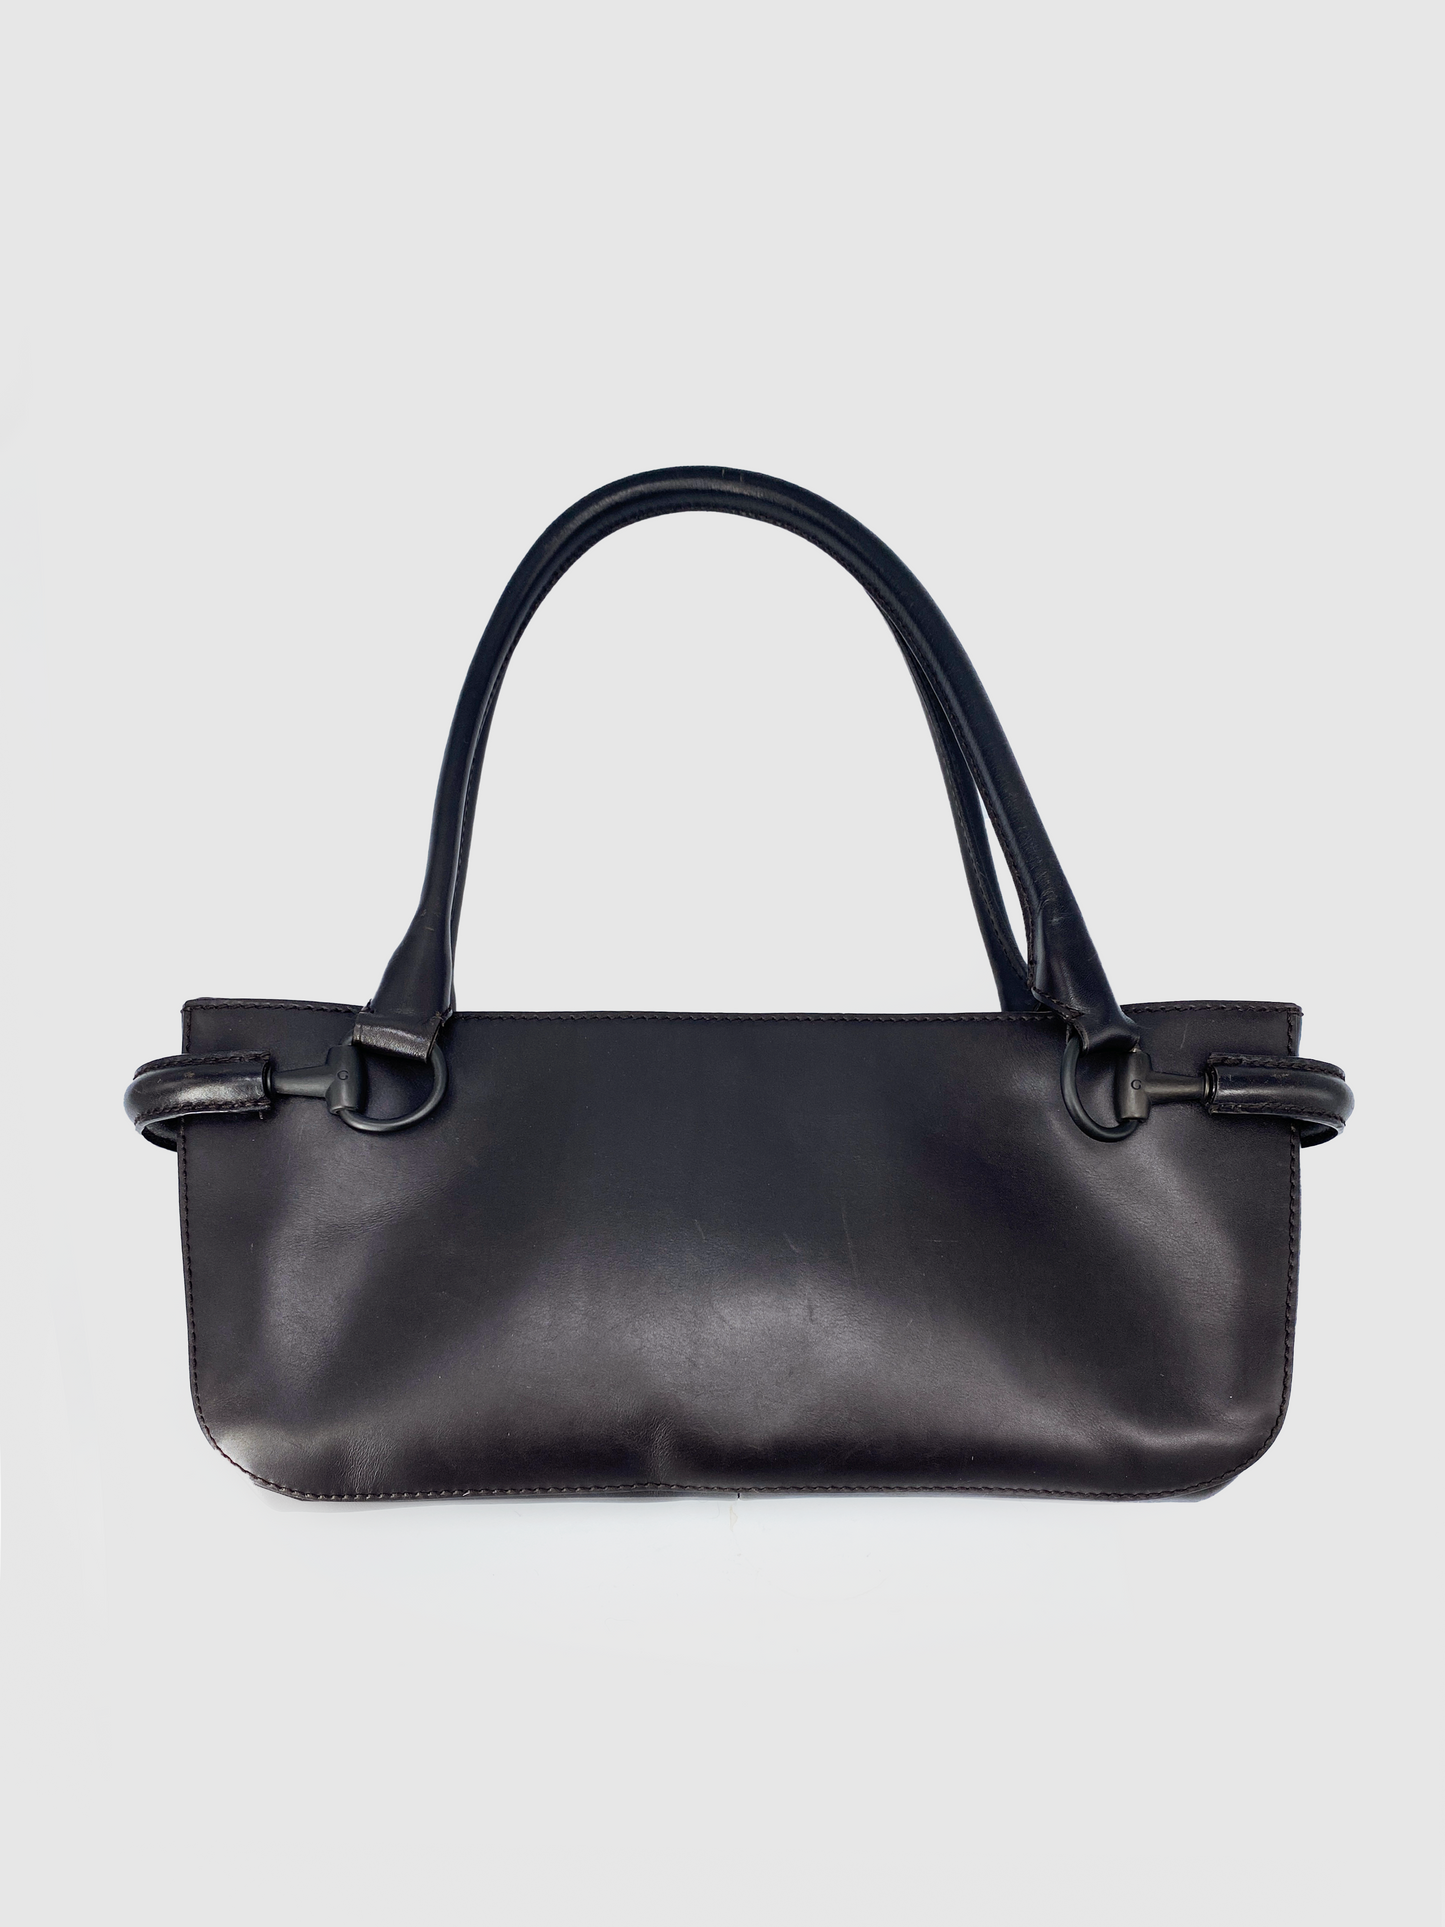 Gucci Horsebit Brown Leather Shoulder Bag